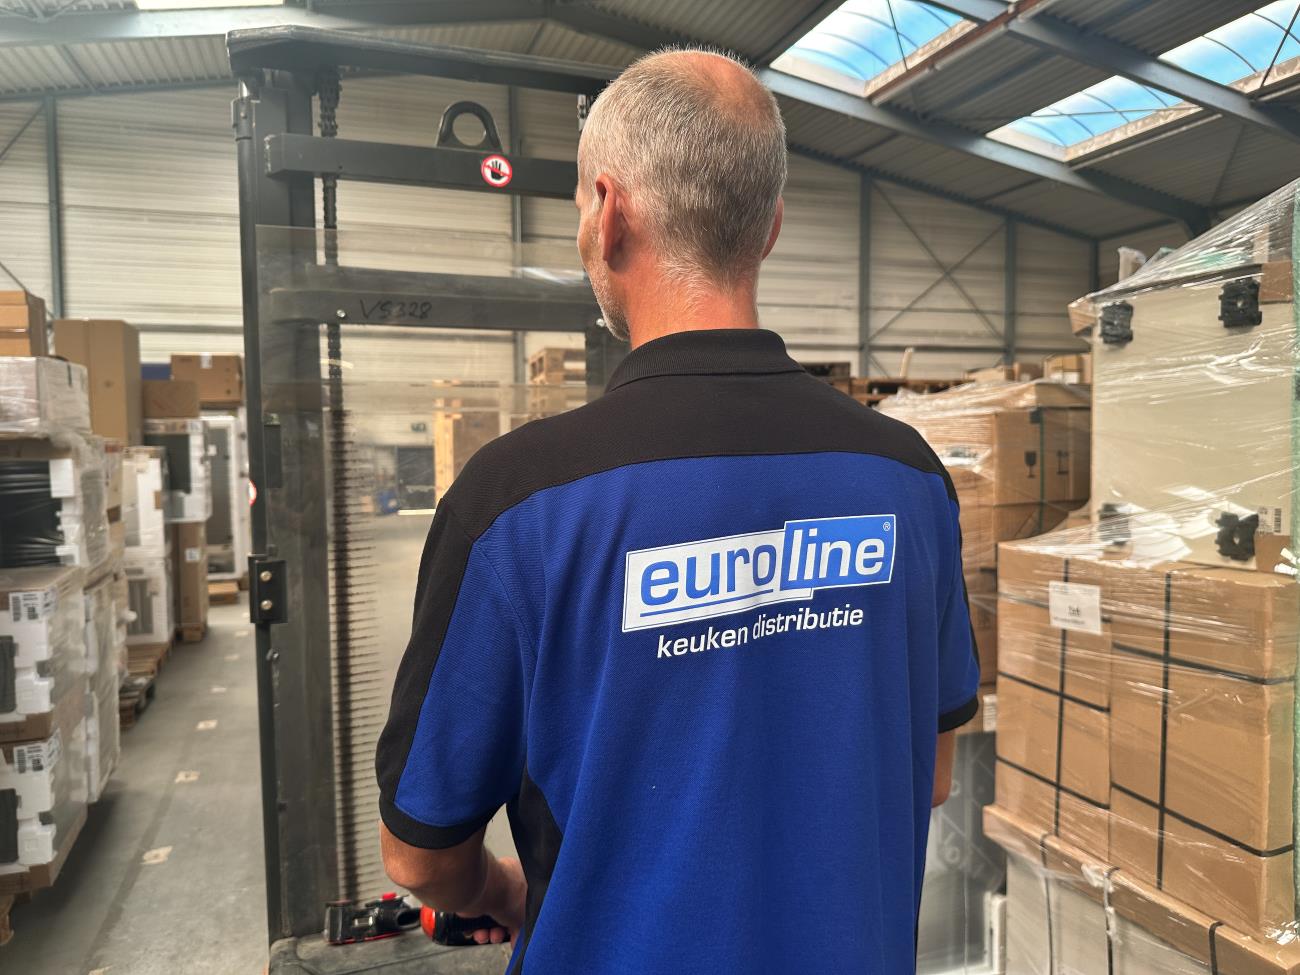 Euroline keuken distributie sinds 1991 een betrouwbare partner